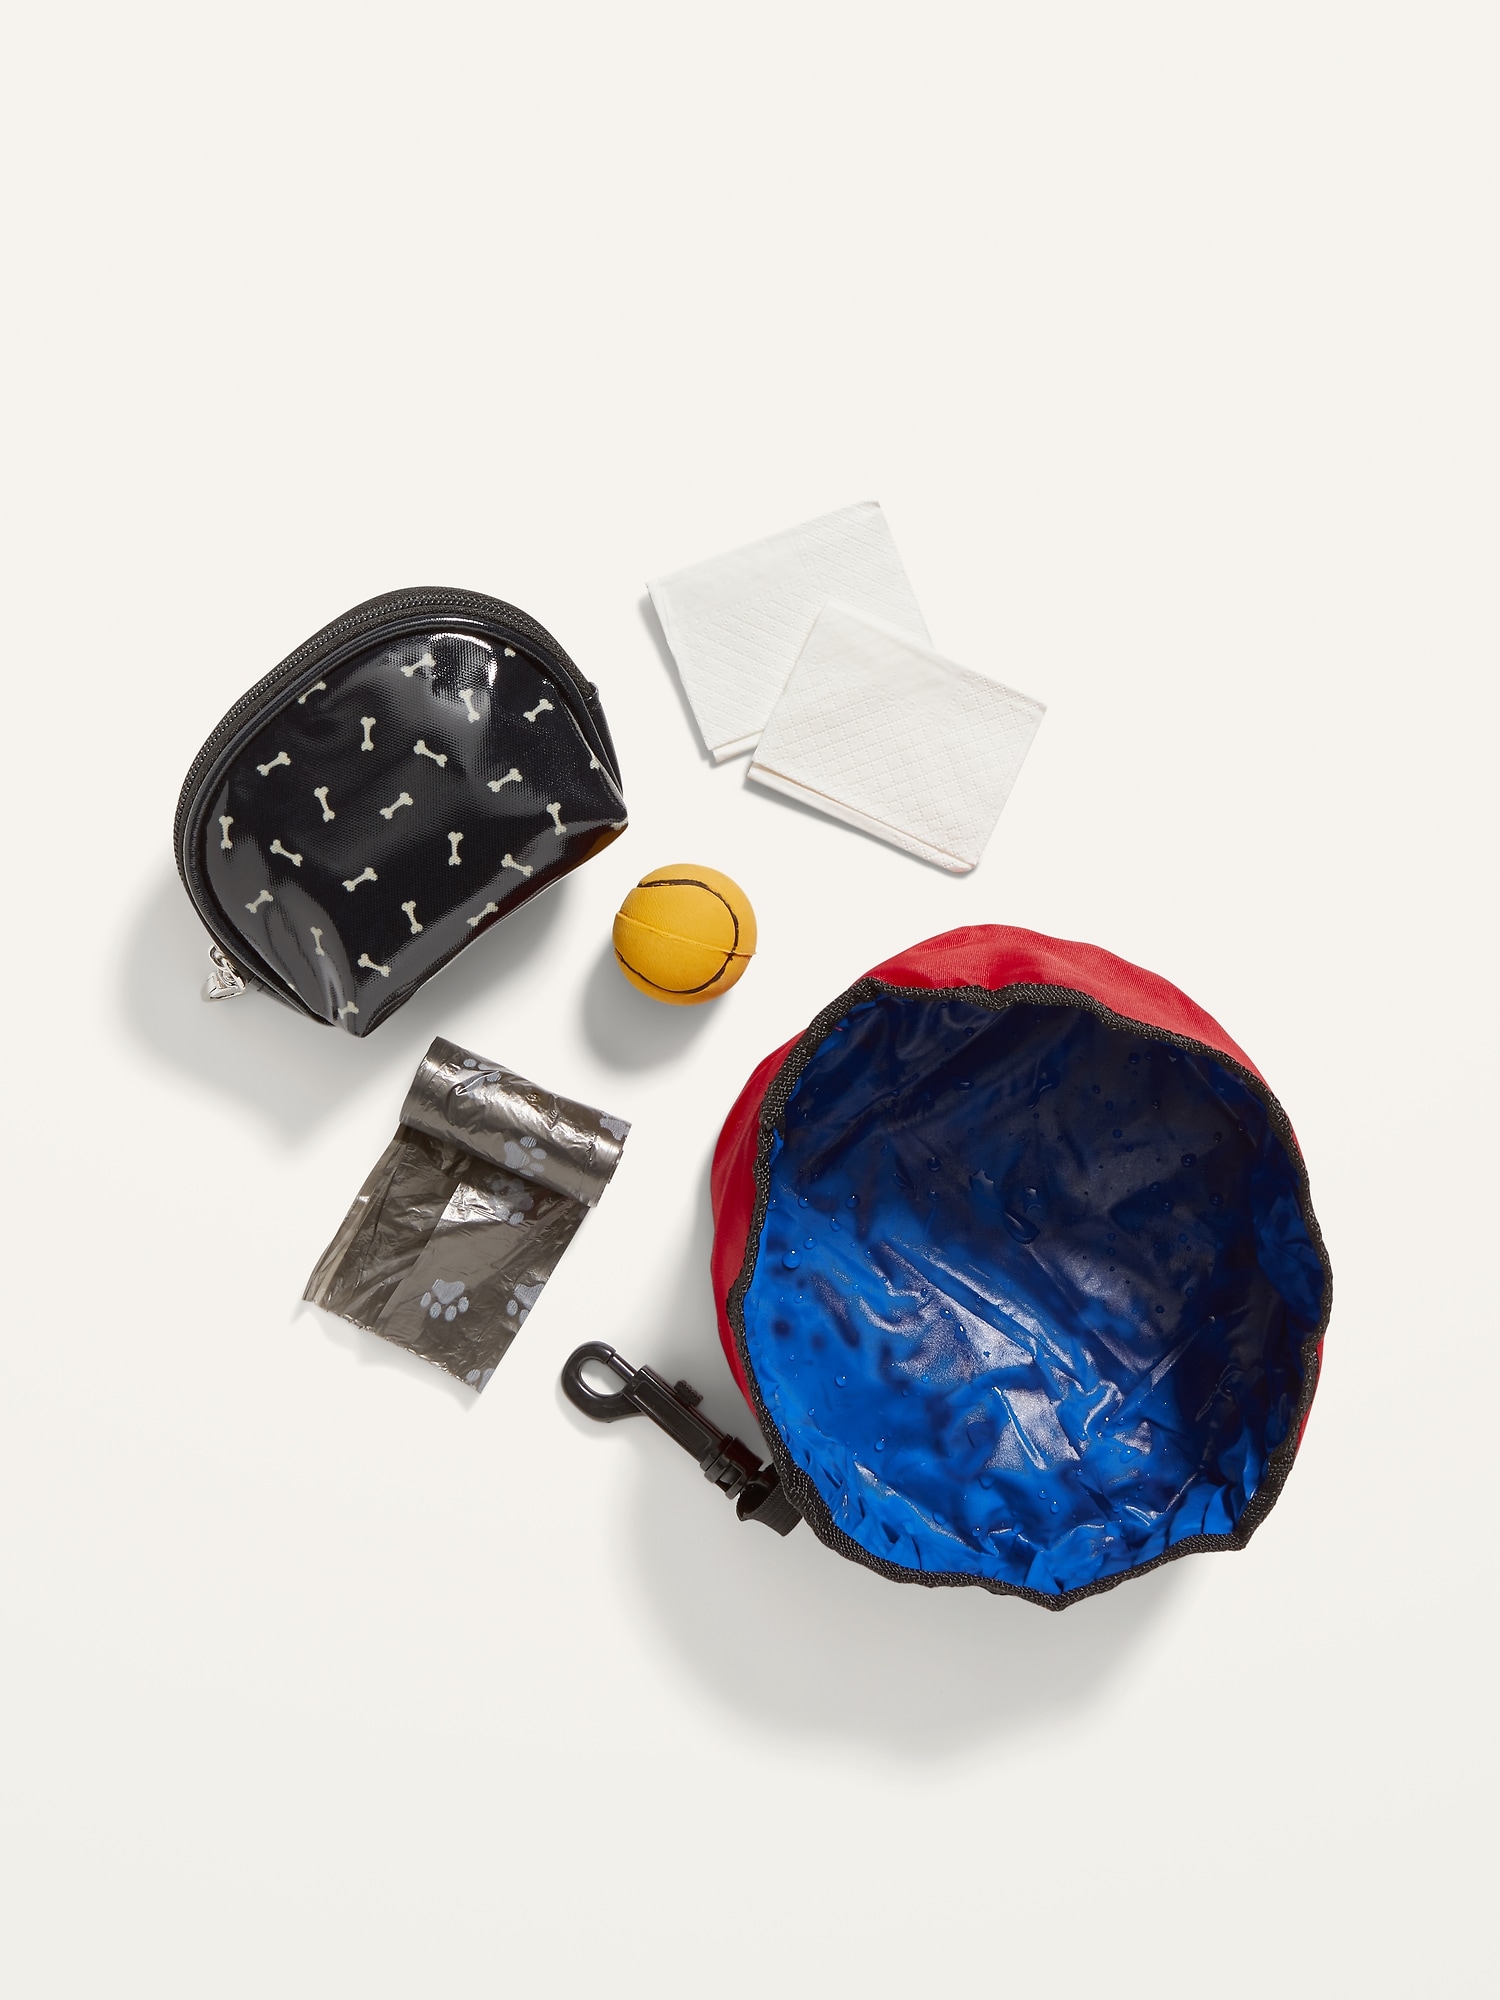 Mini-Emergency Kit Gift Sets for Women, Men & Dogs